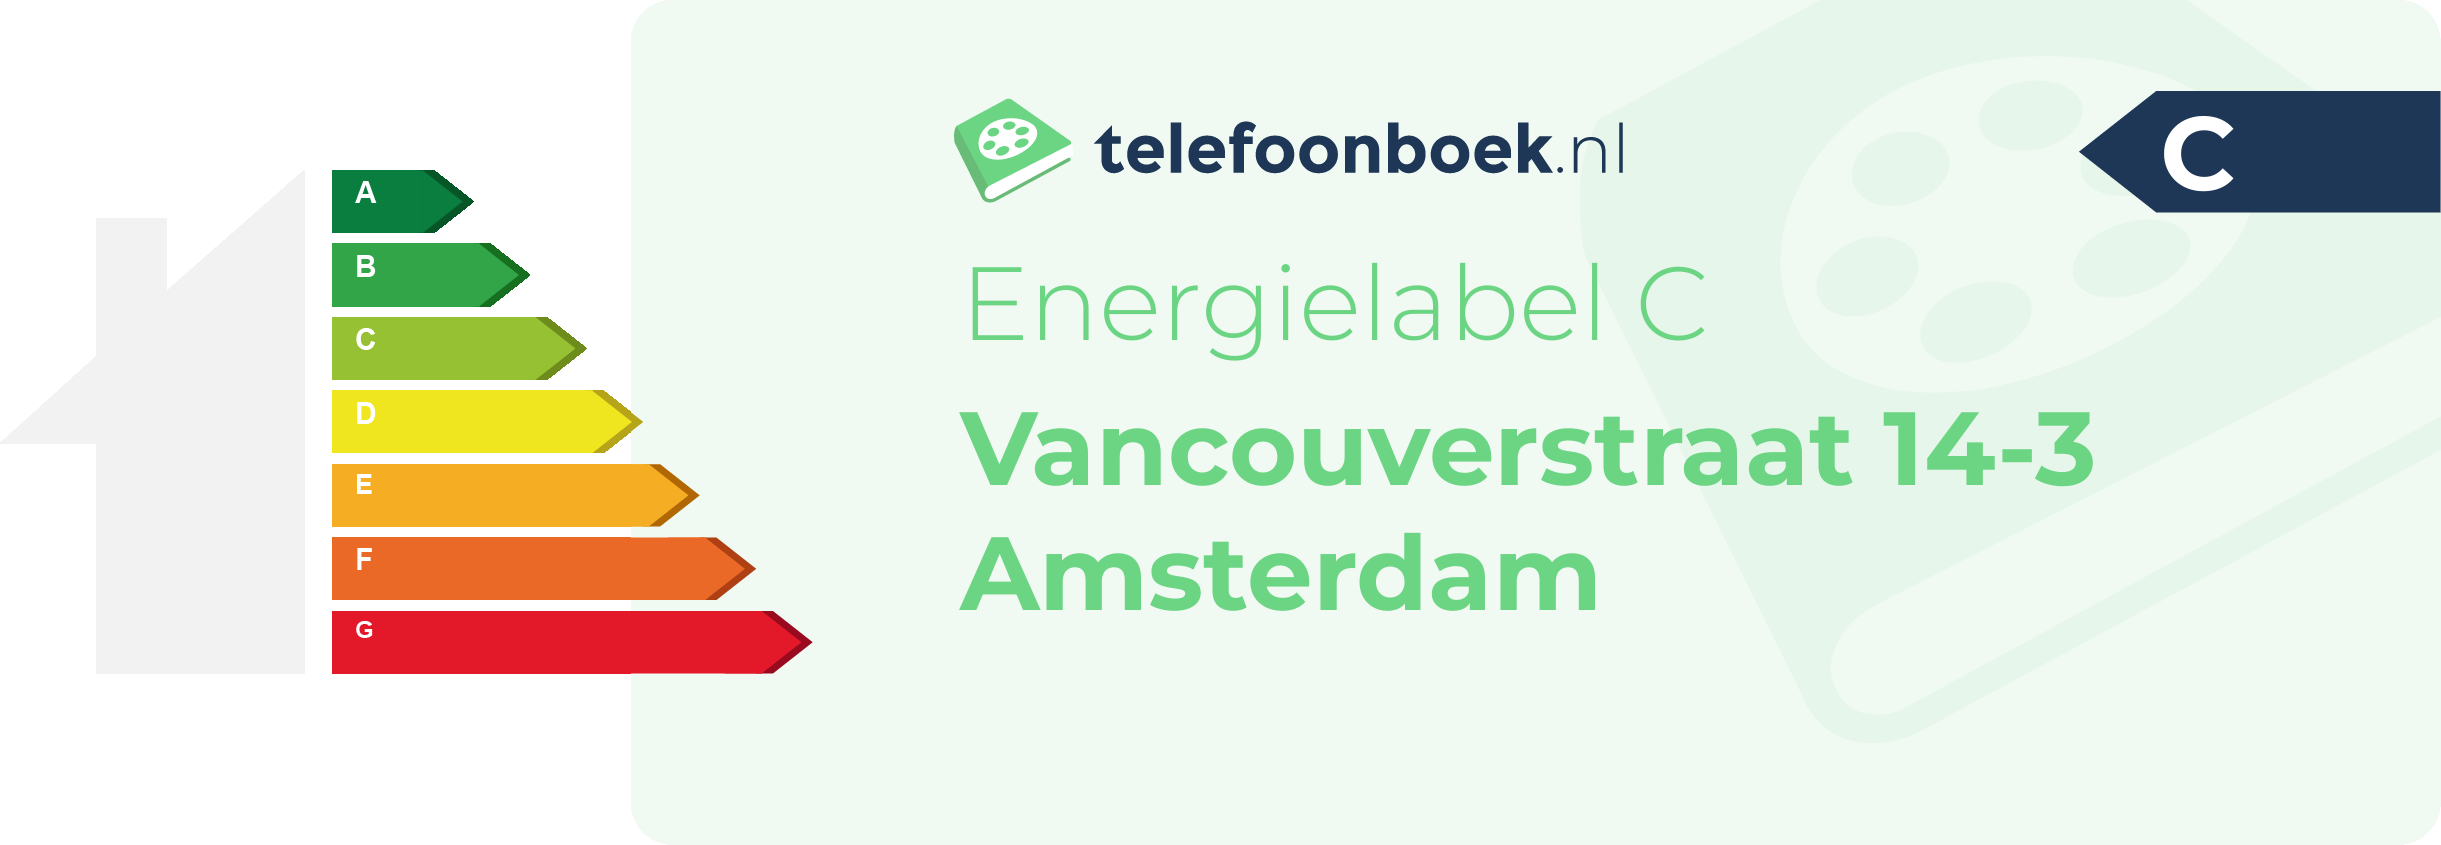 Energielabel Vancouverstraat 14-3 Amsterdam